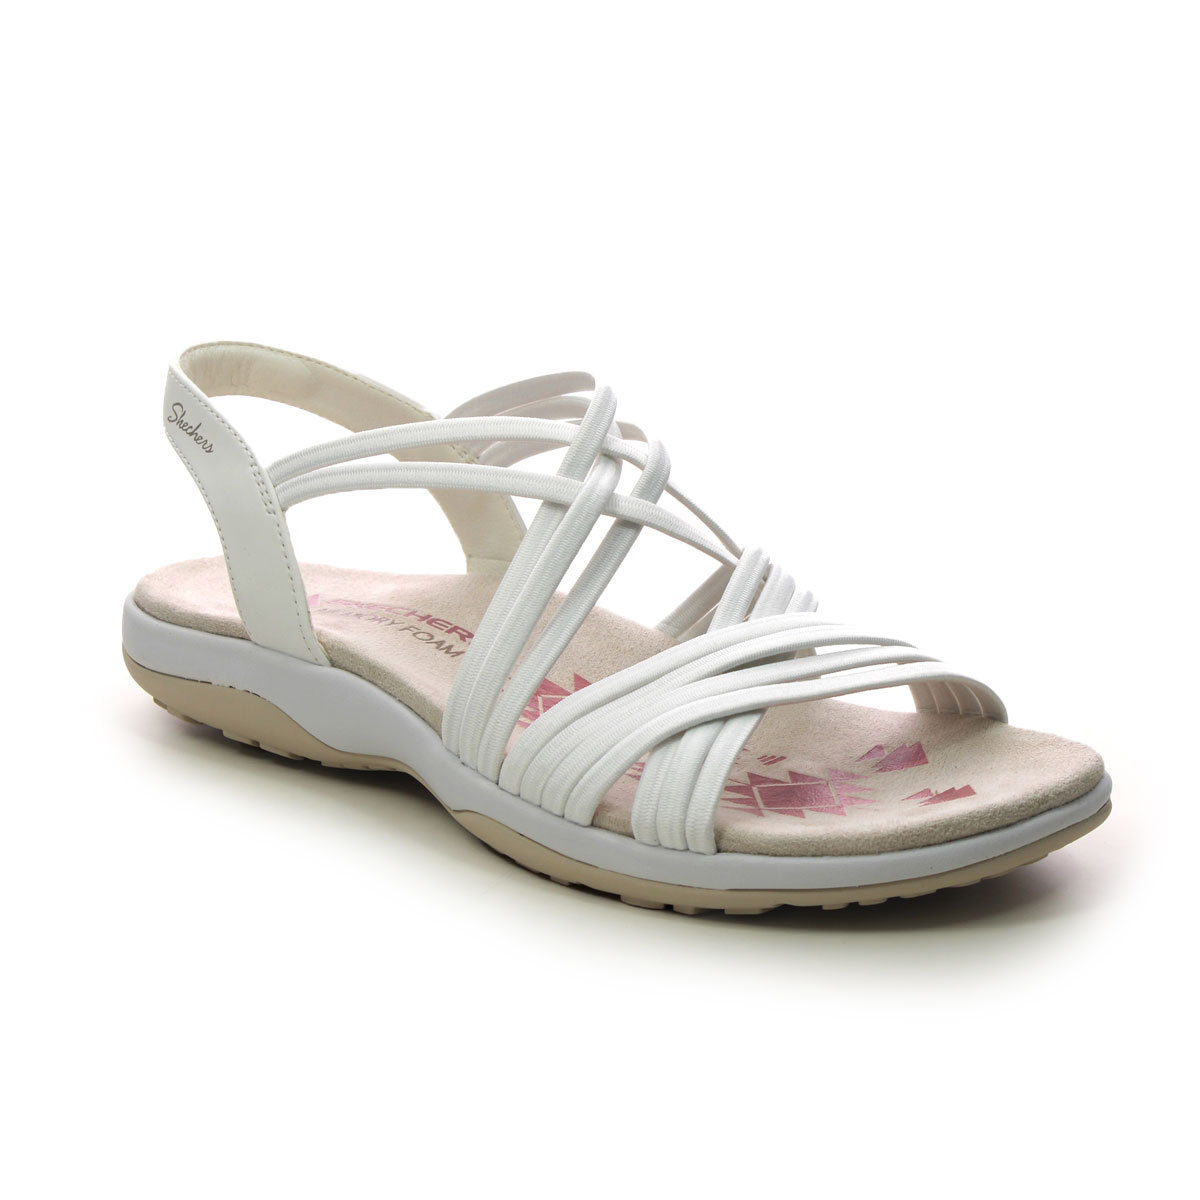 Skechers Reggae Slim Sunnyside WHT White Womens Walking Sandals 163185 in a Plain Textile in Size 8